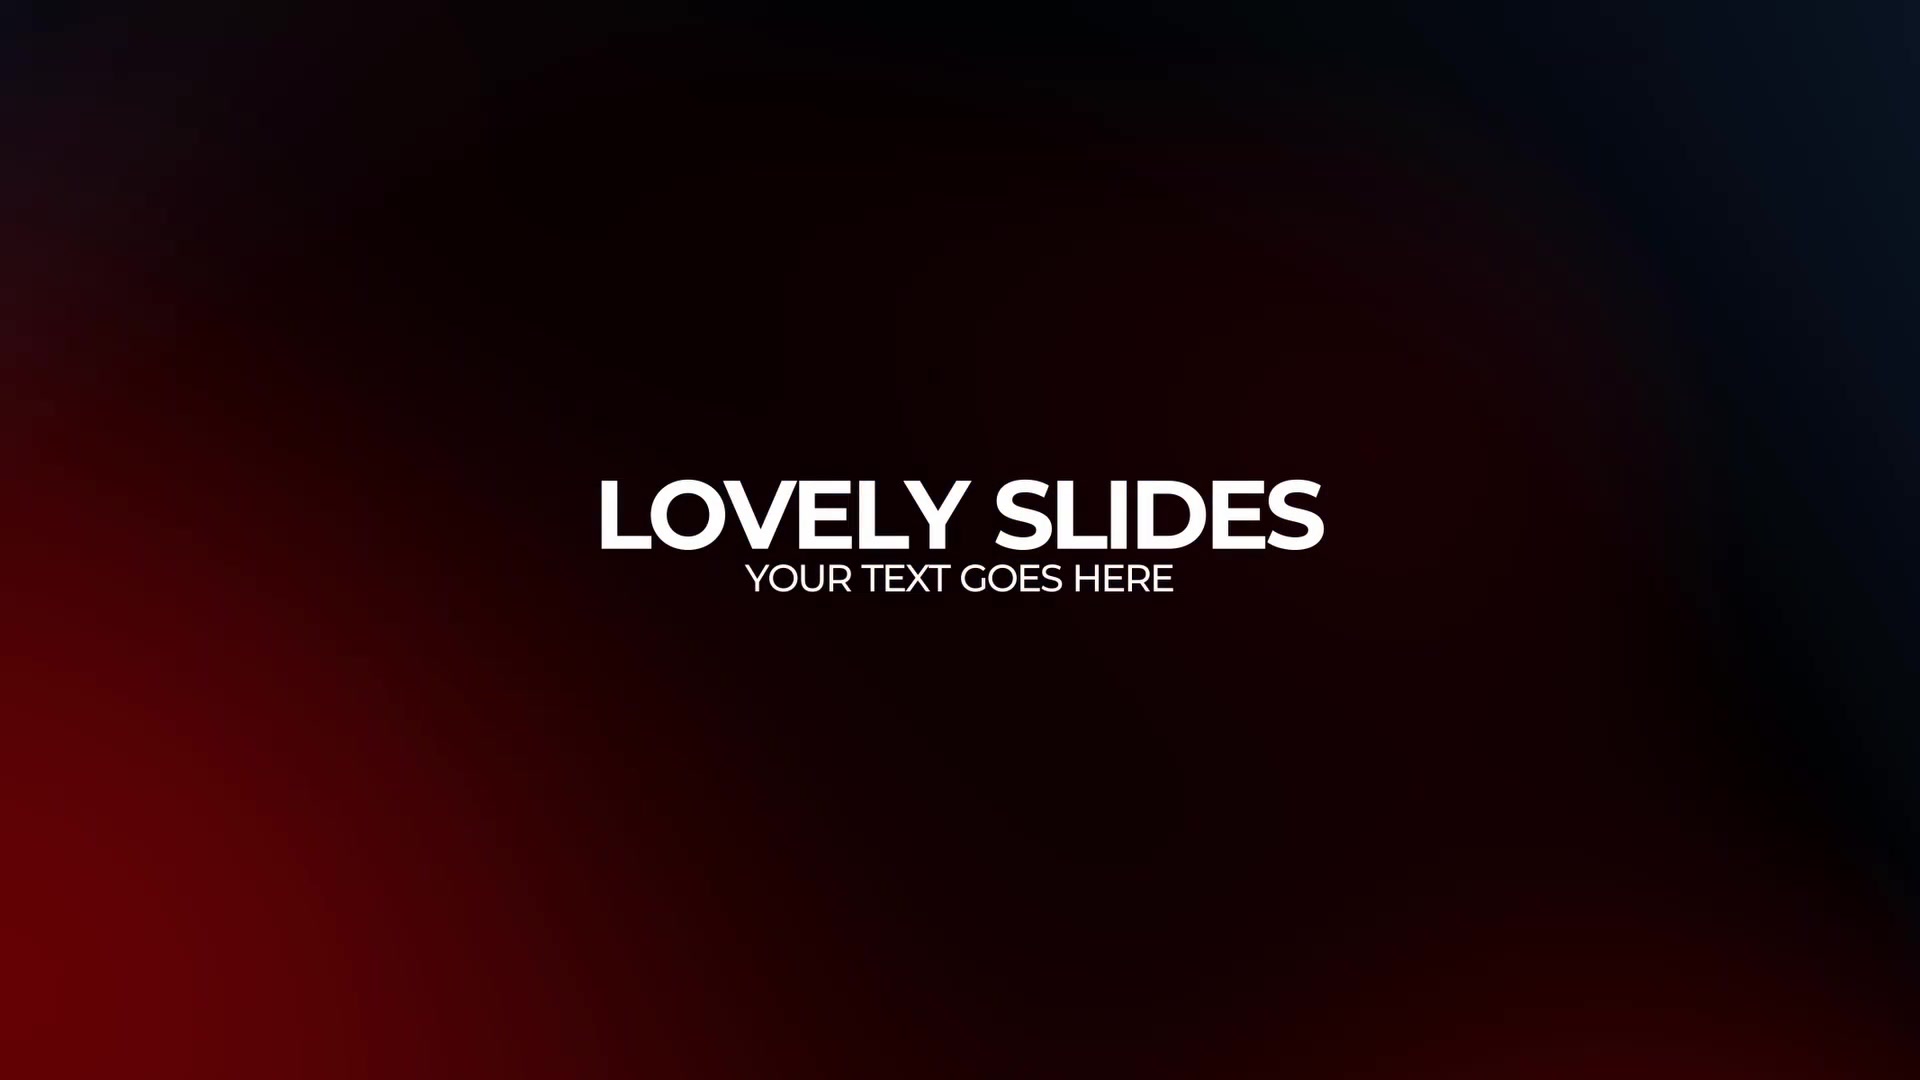 Lovely Slides | DR Videohive 37675512 DaVinci Resolve Image 13